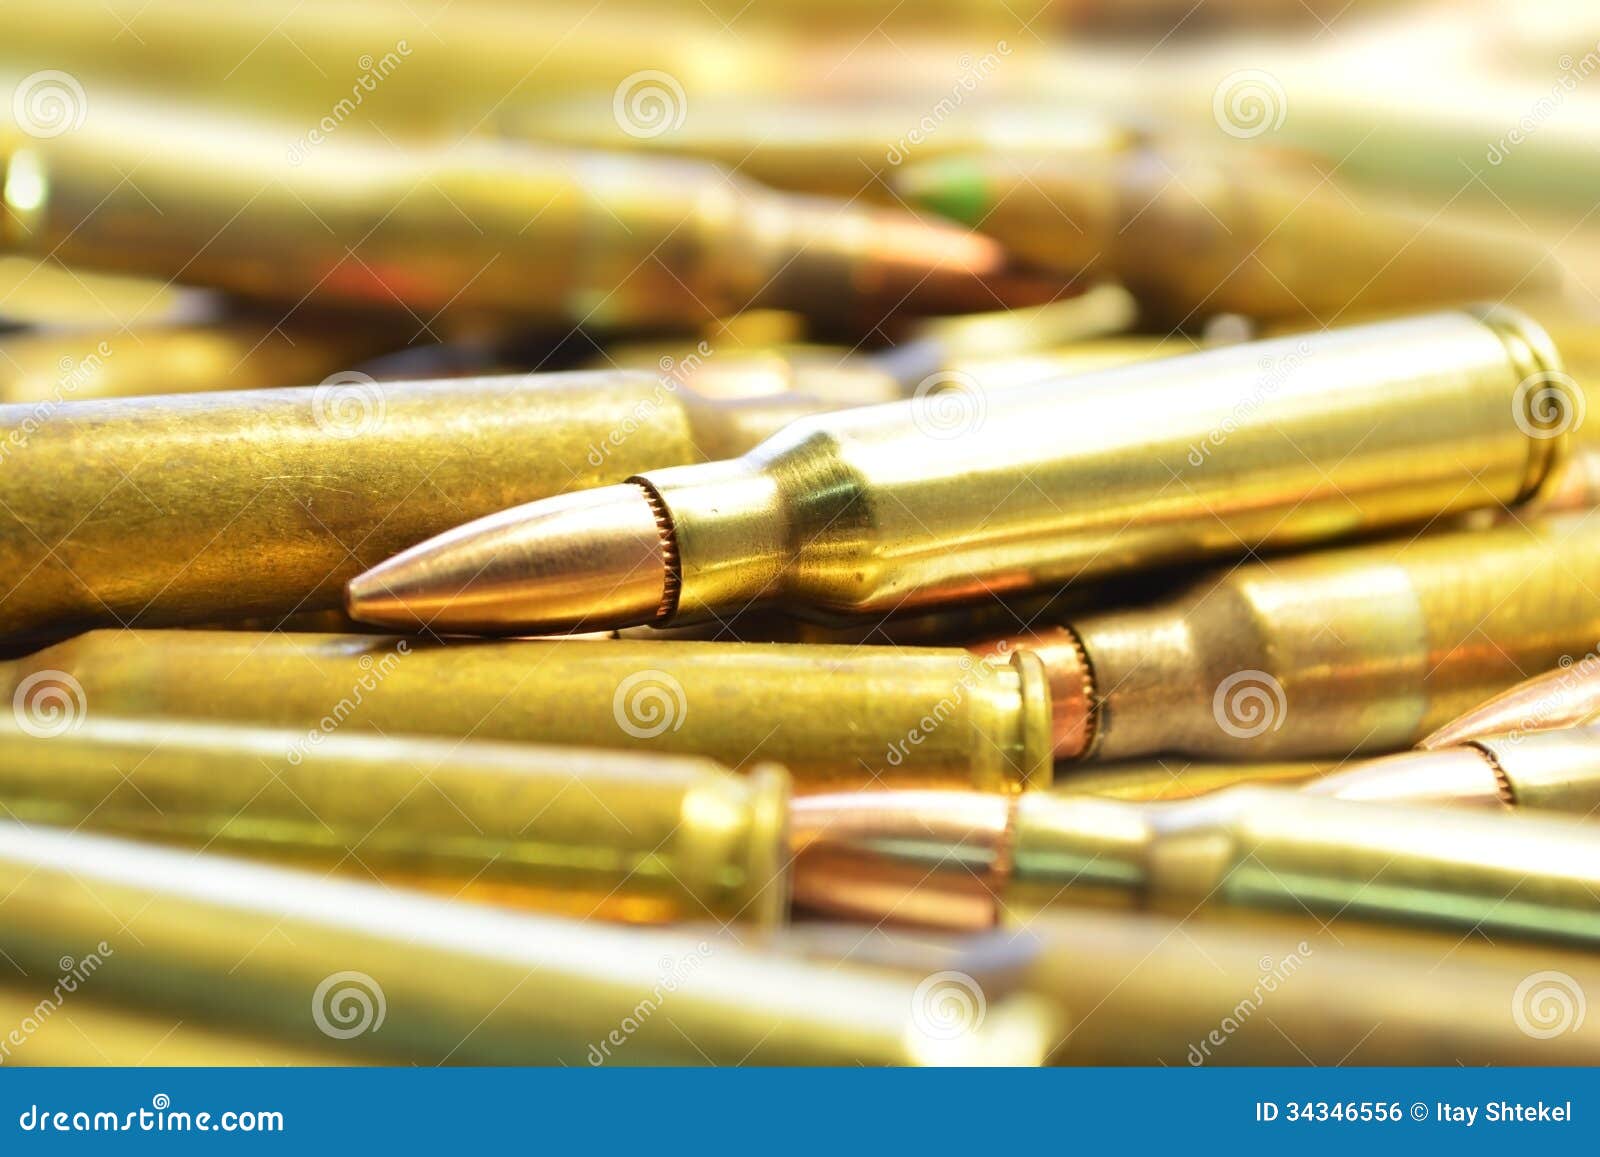 m16 bullets